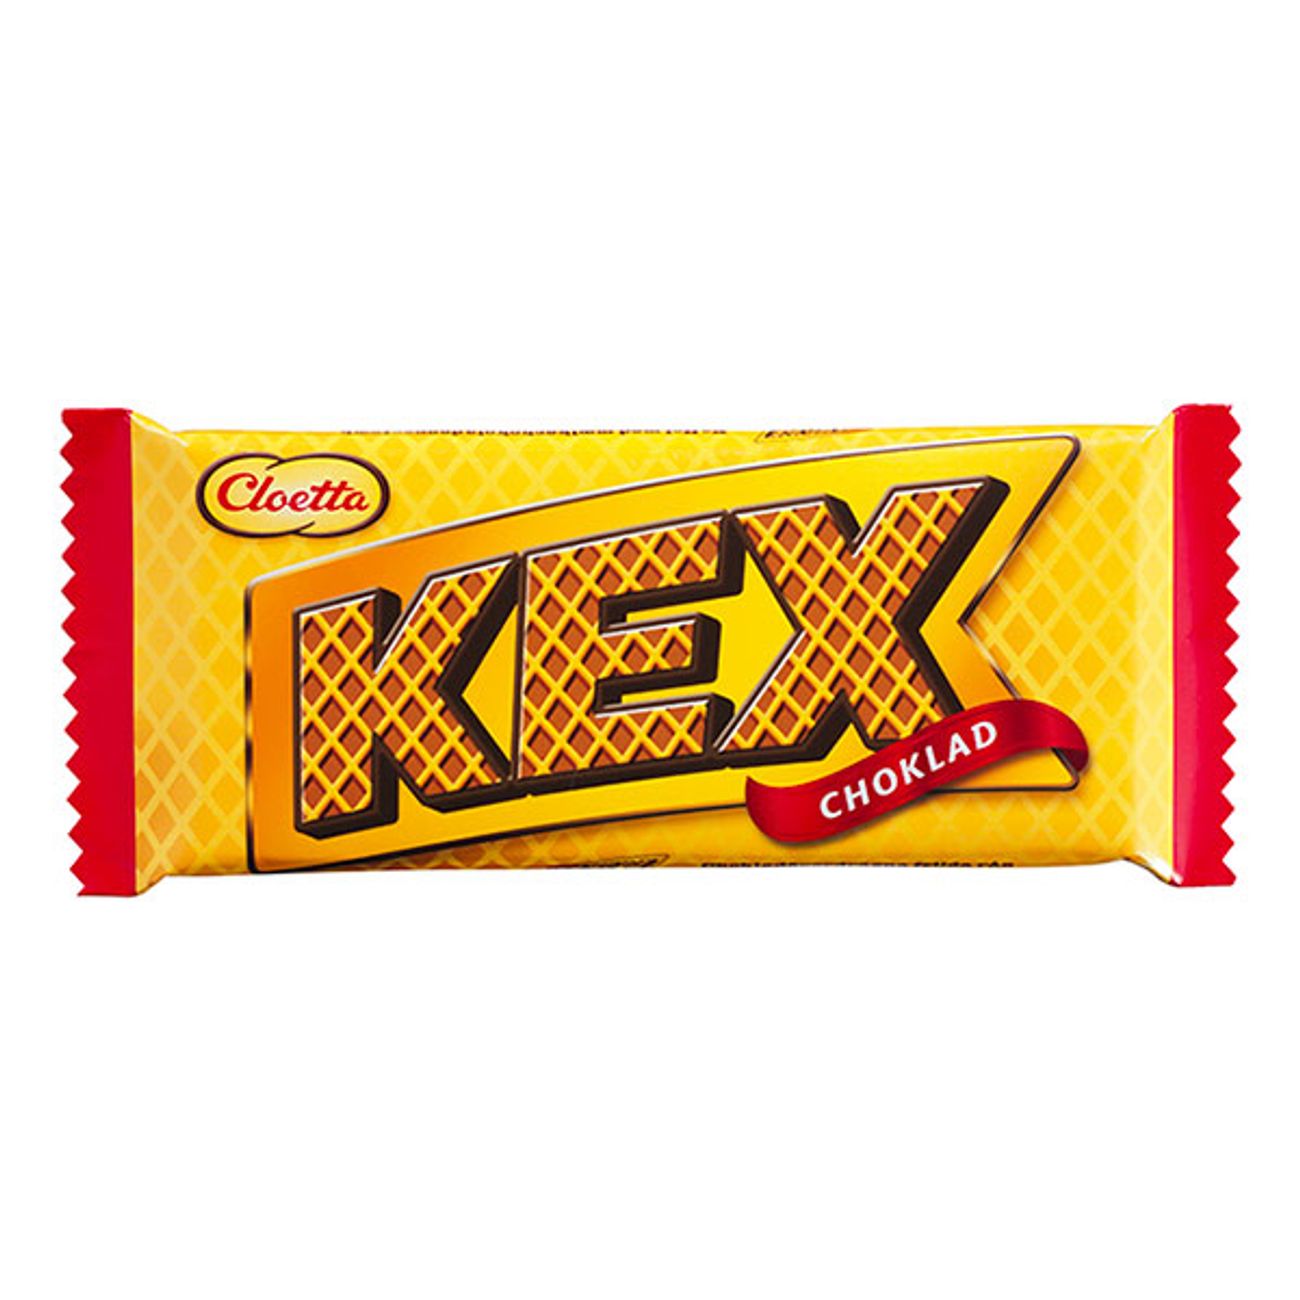 kexchoklad-original-1